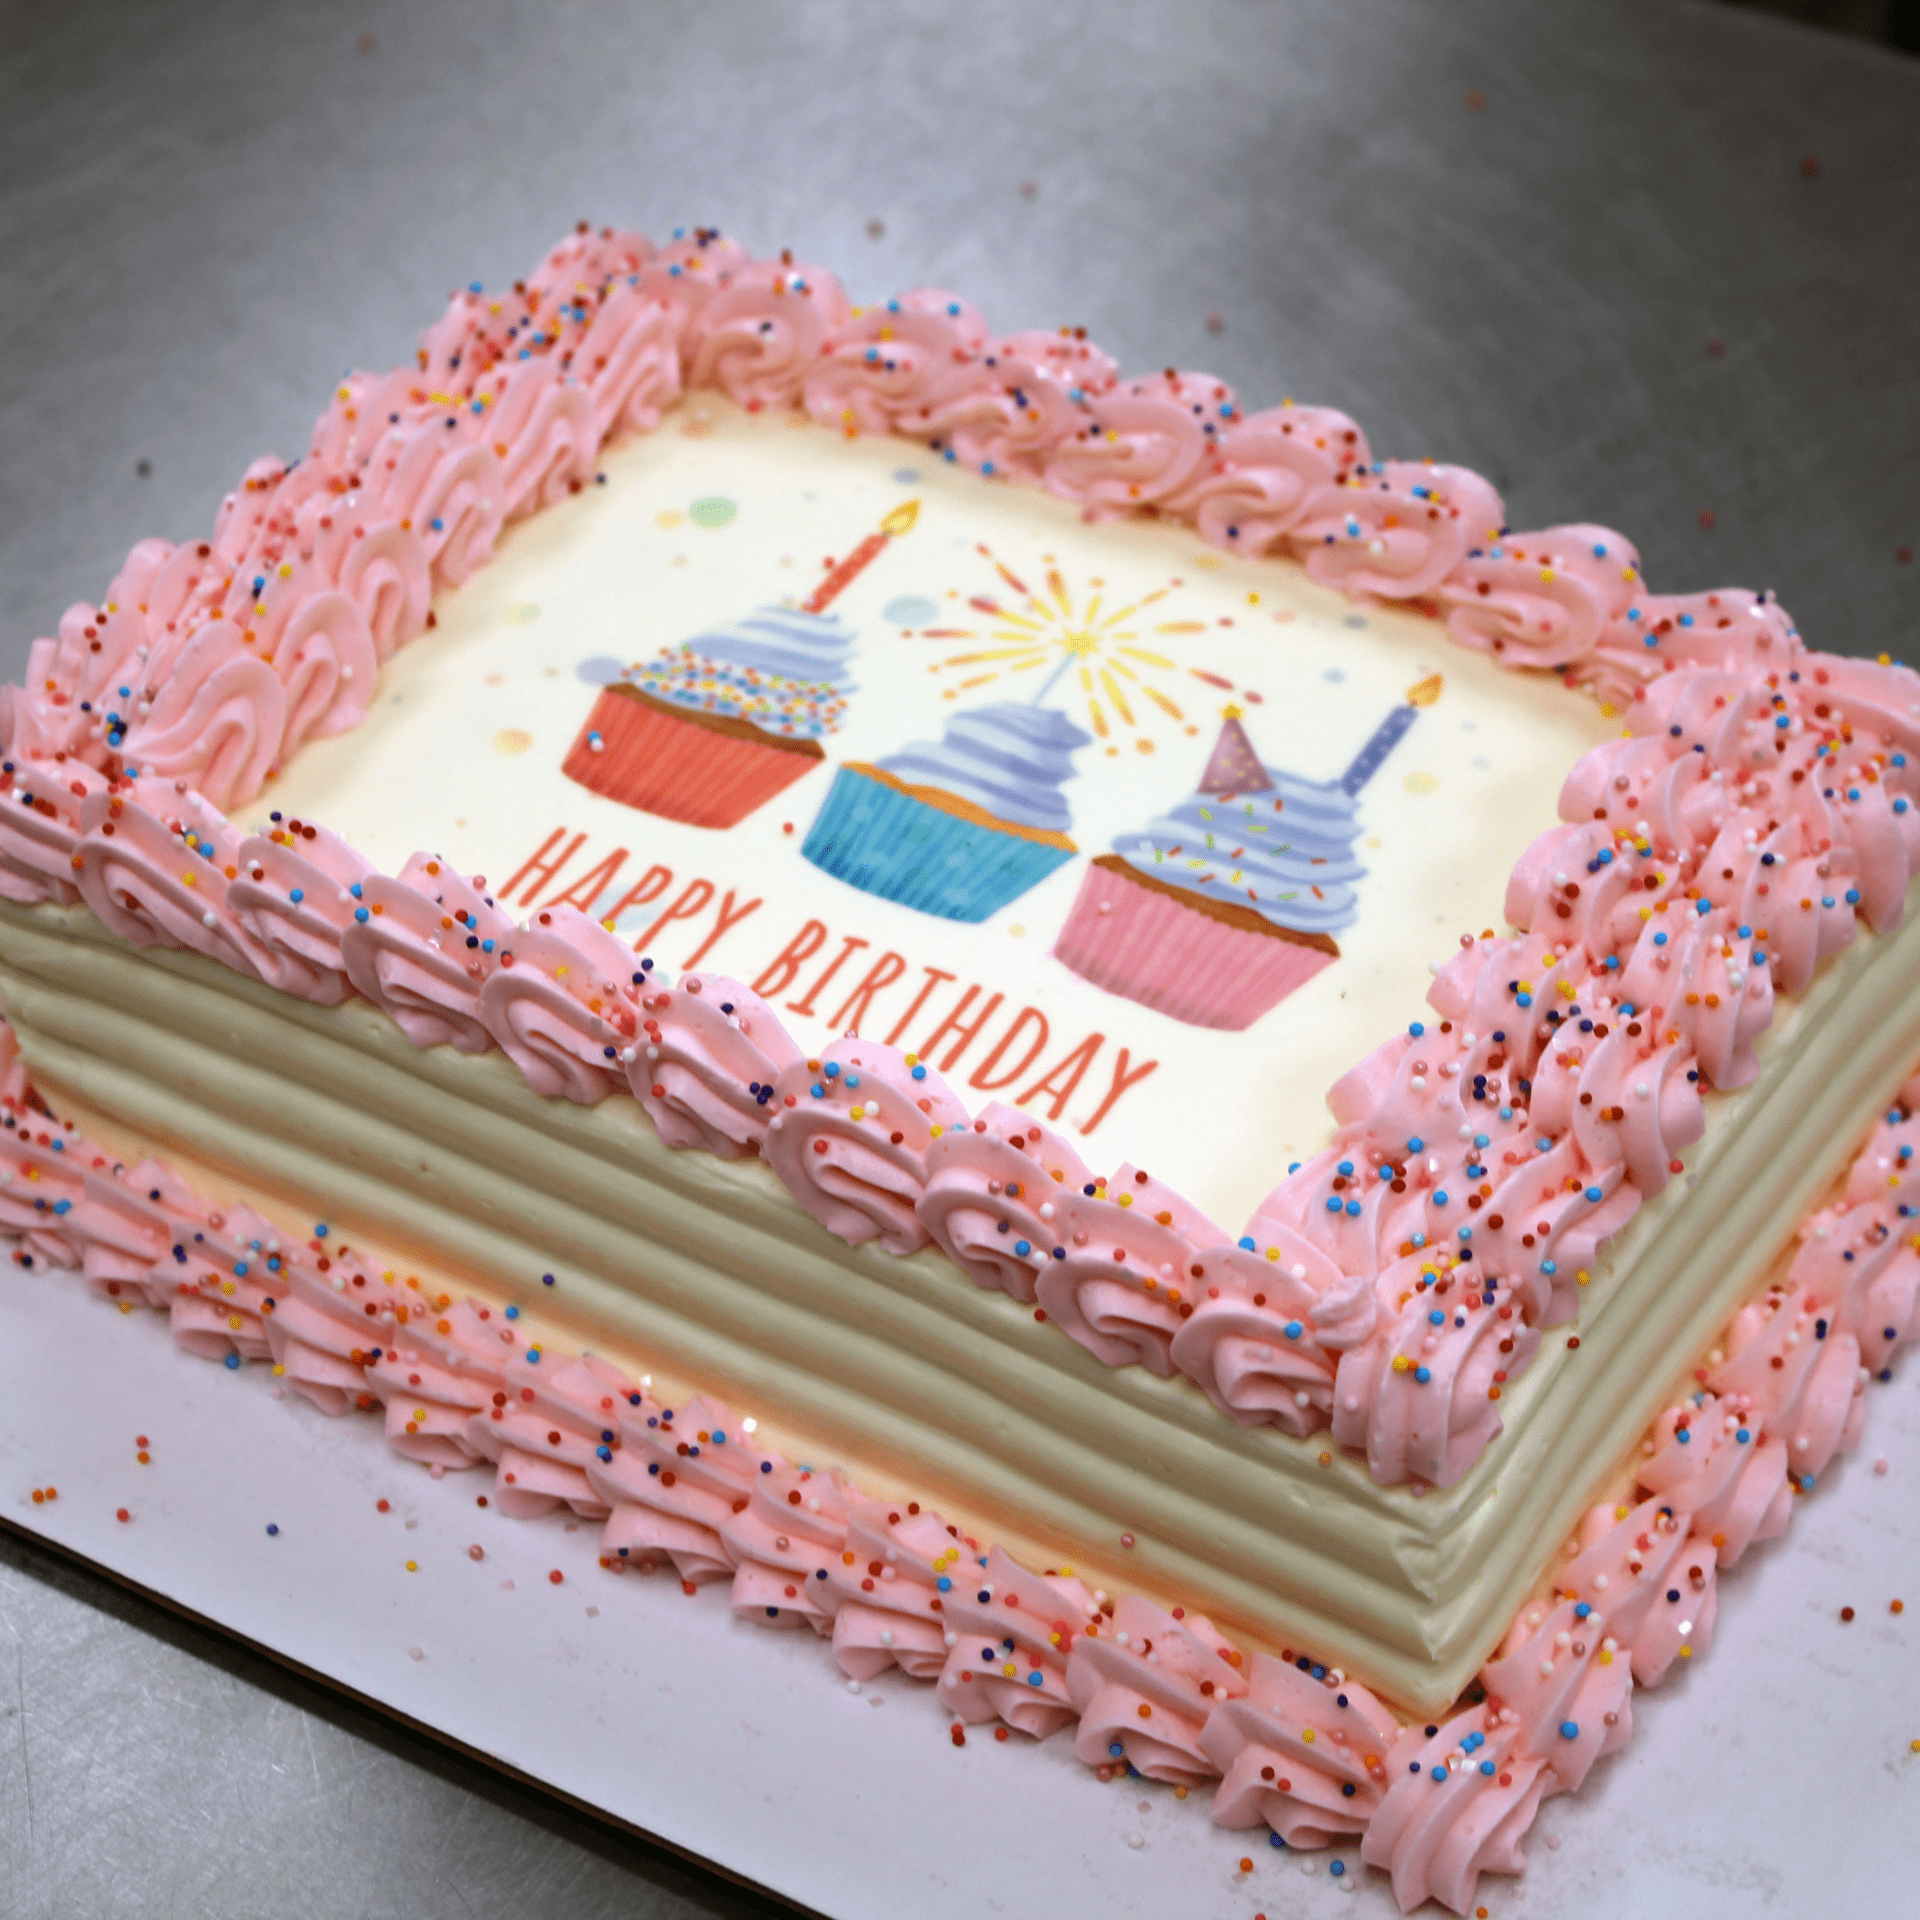 Pink and White Birthday Cake